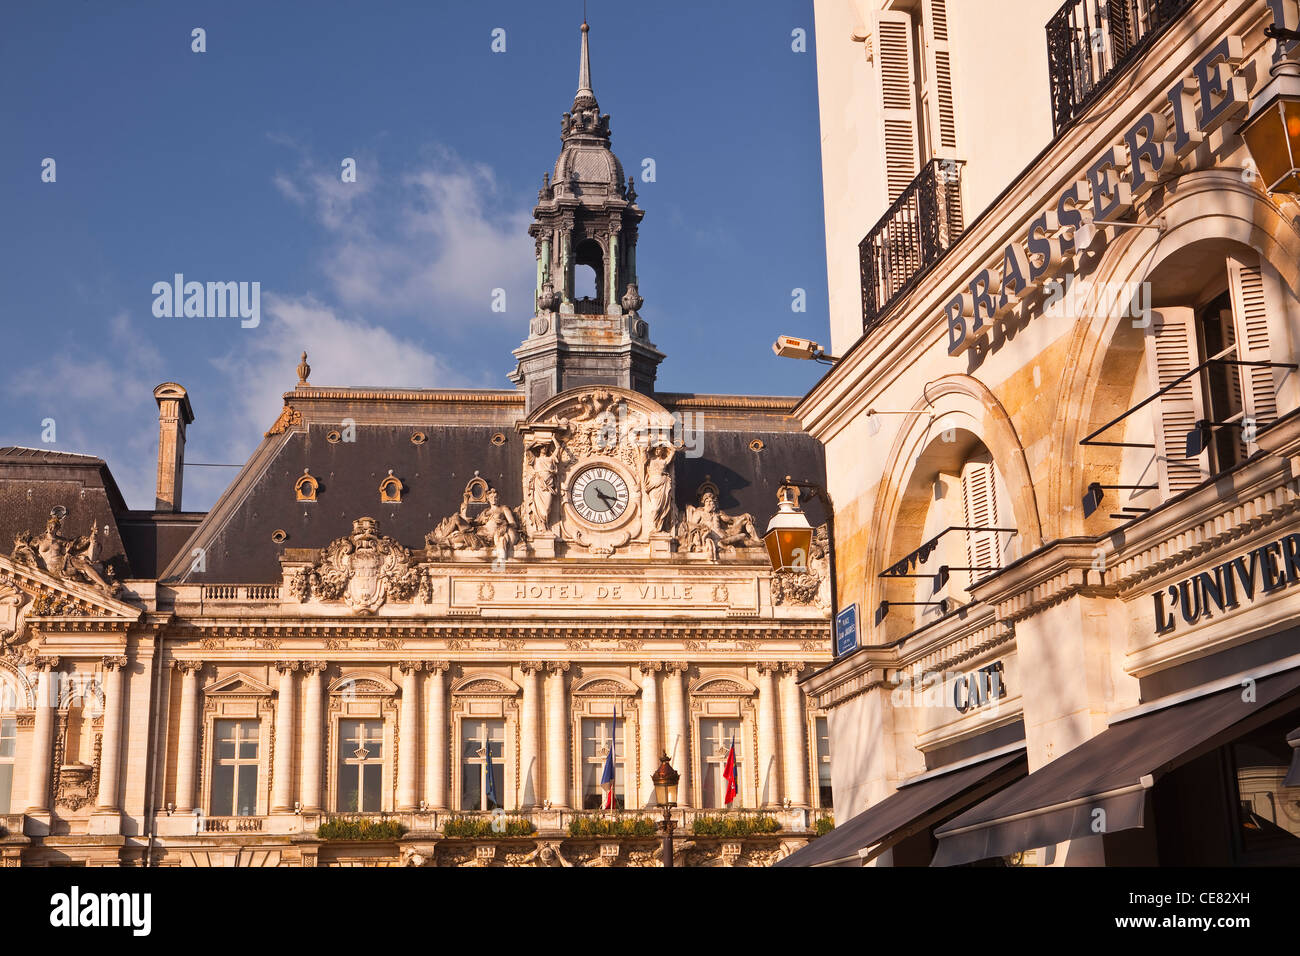 Die Fassade des Hotel de Ville oder Rathaus in Tours, Frankreich. Es wurde von Victor Laloux entworfen. Stockfoto